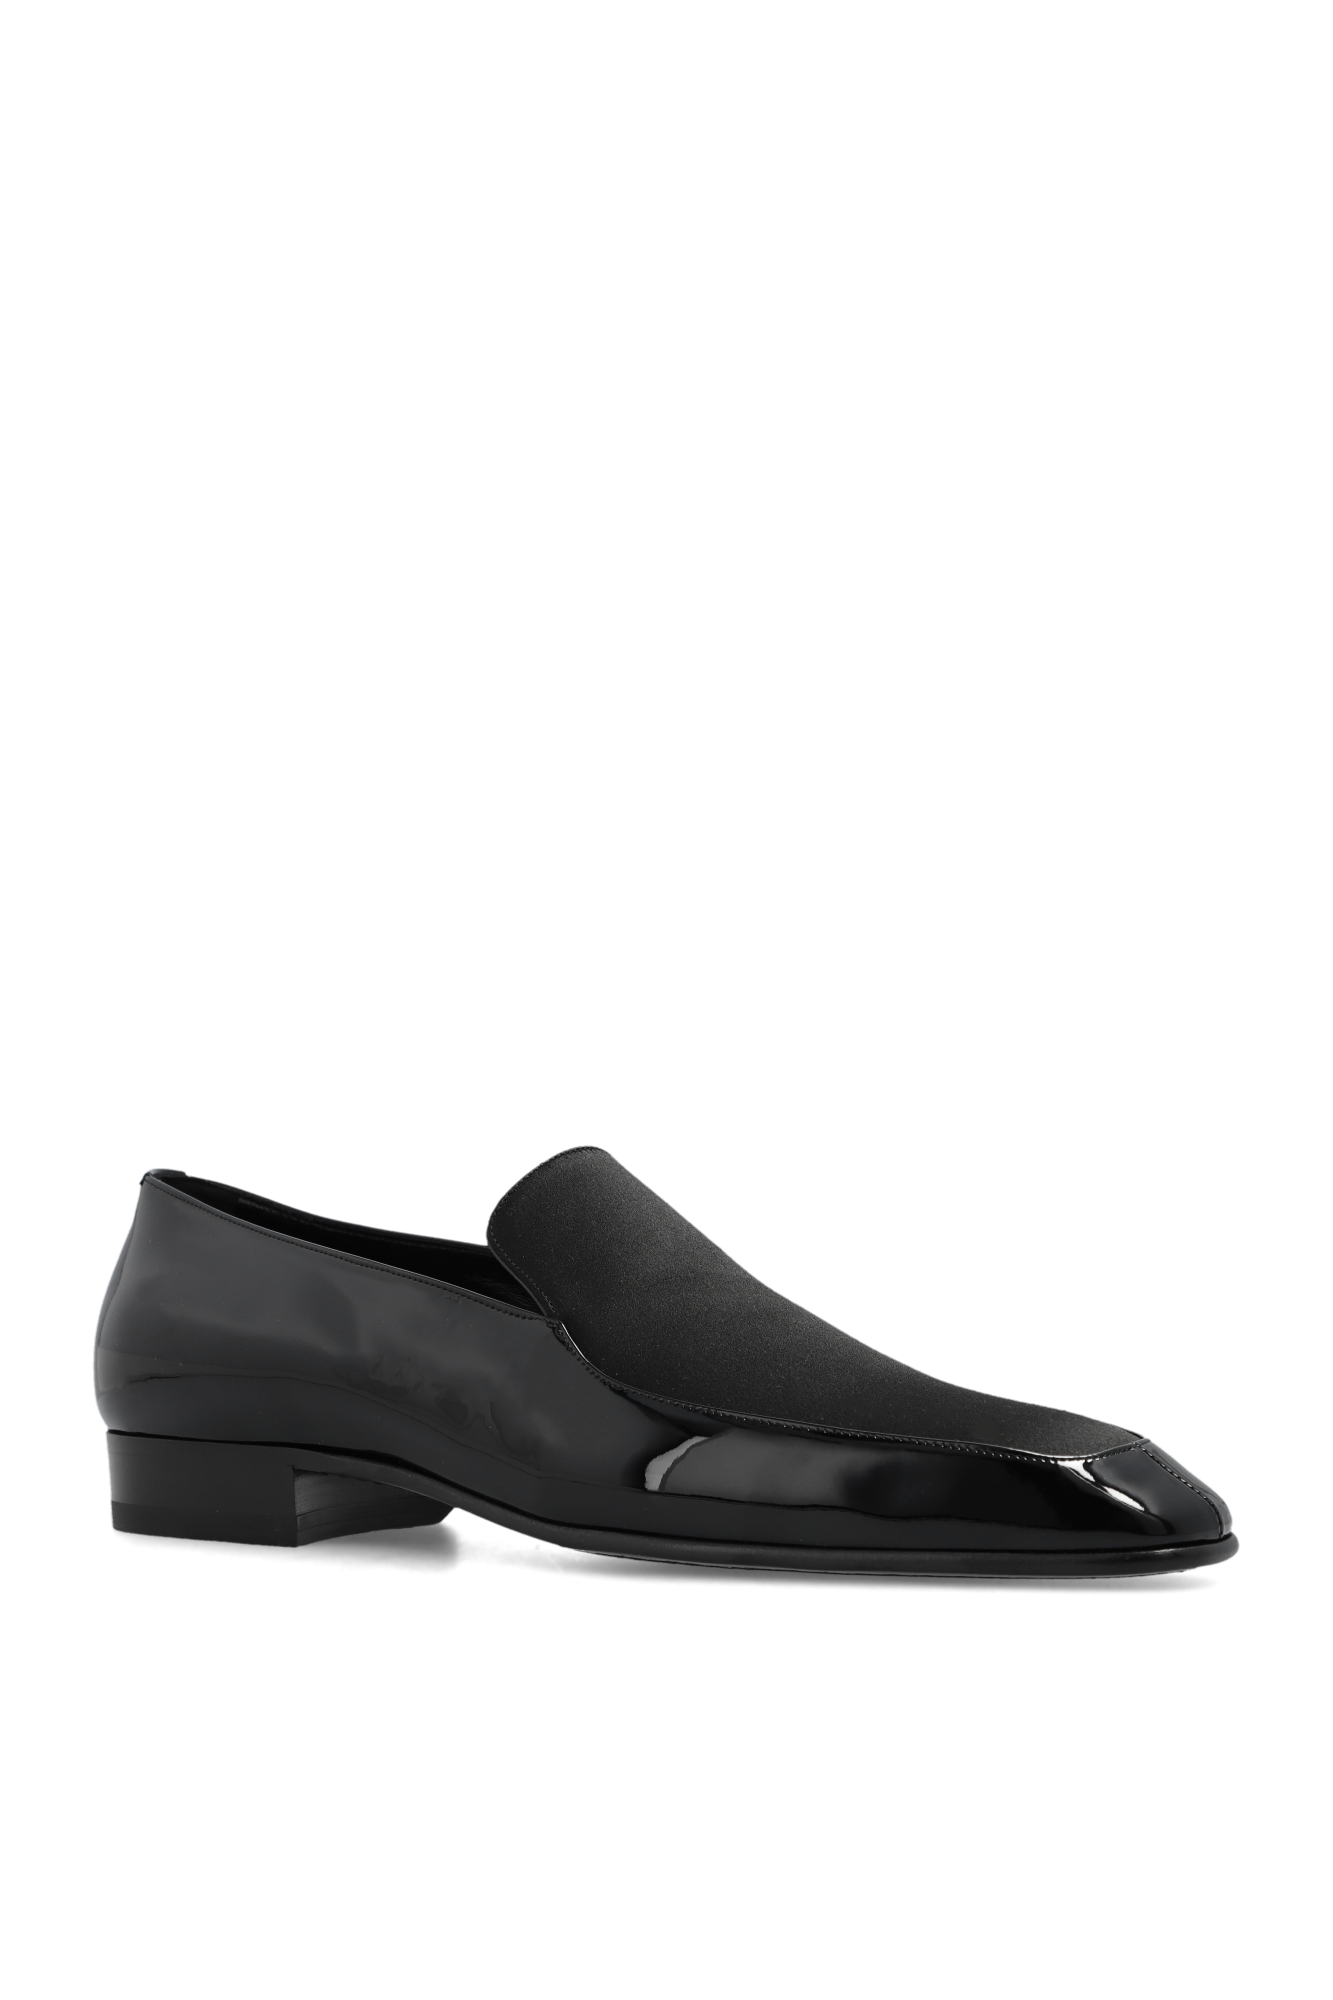 Saint Laurent ‘Gabriel’ loafers